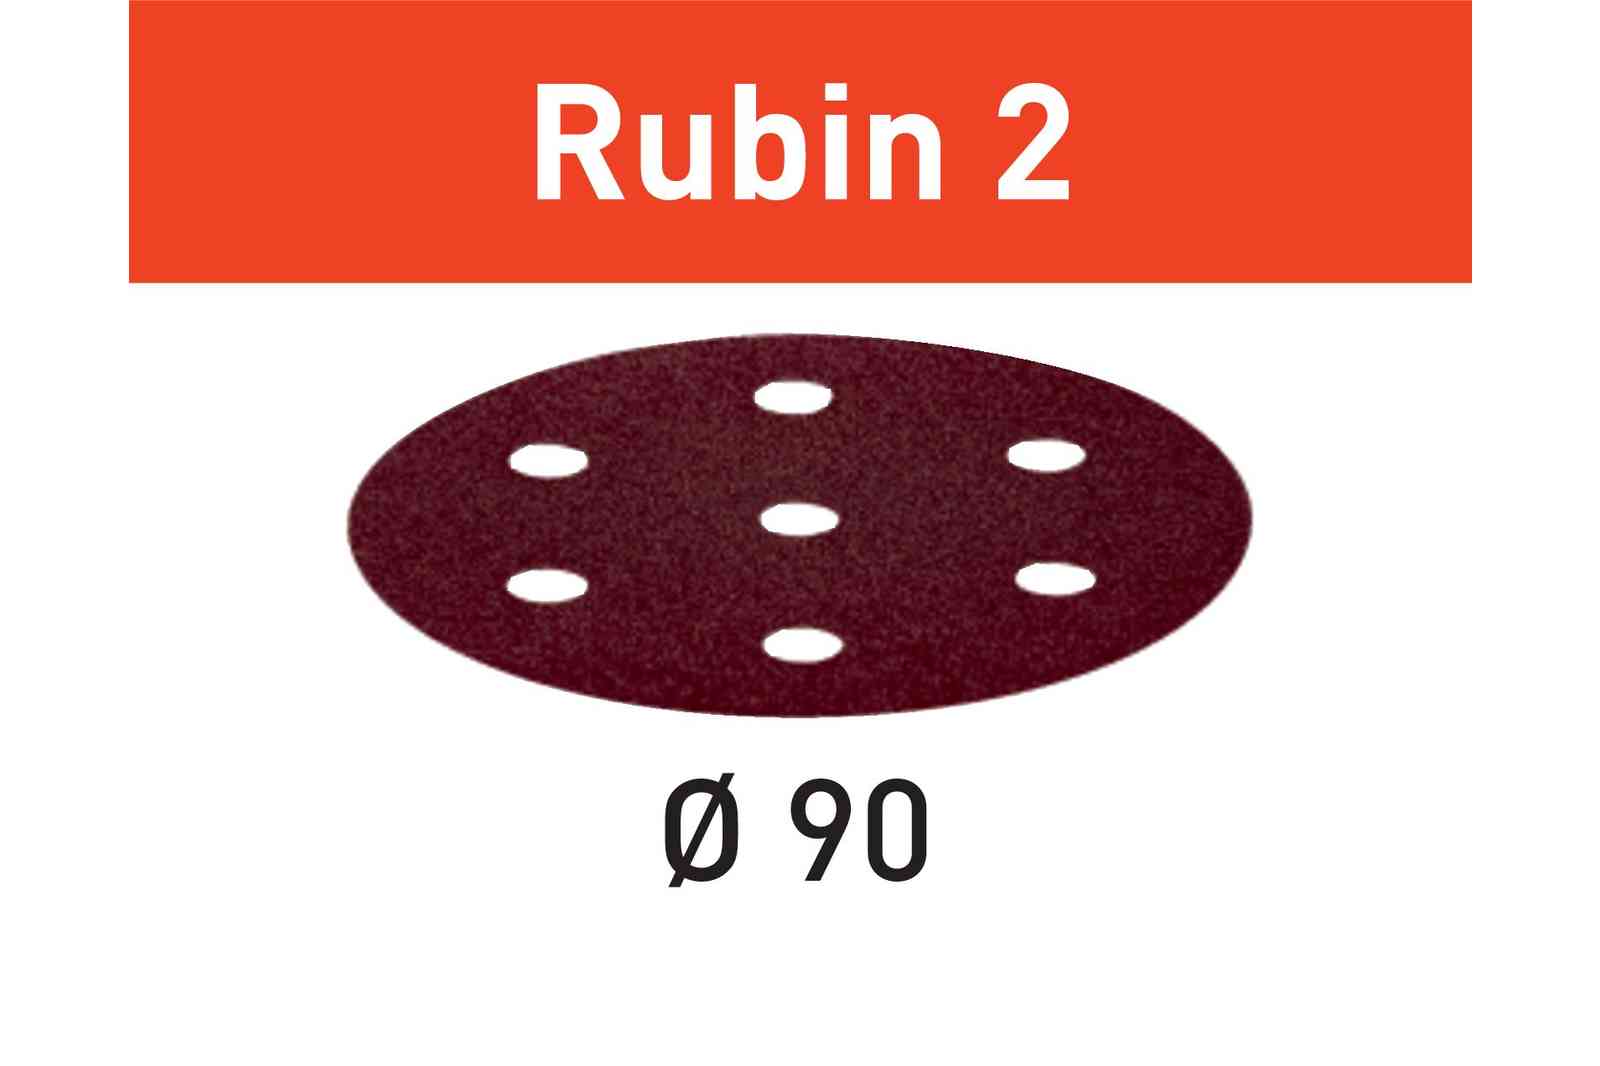 FESTOOL -  Abrasivo RUBIN 2 disco carta uso automatico per levigatura legno - metallo - resine - dimensioni Ø 90 - grana 80 - formato 6 FORI + 1 - note PER RO 90 DX